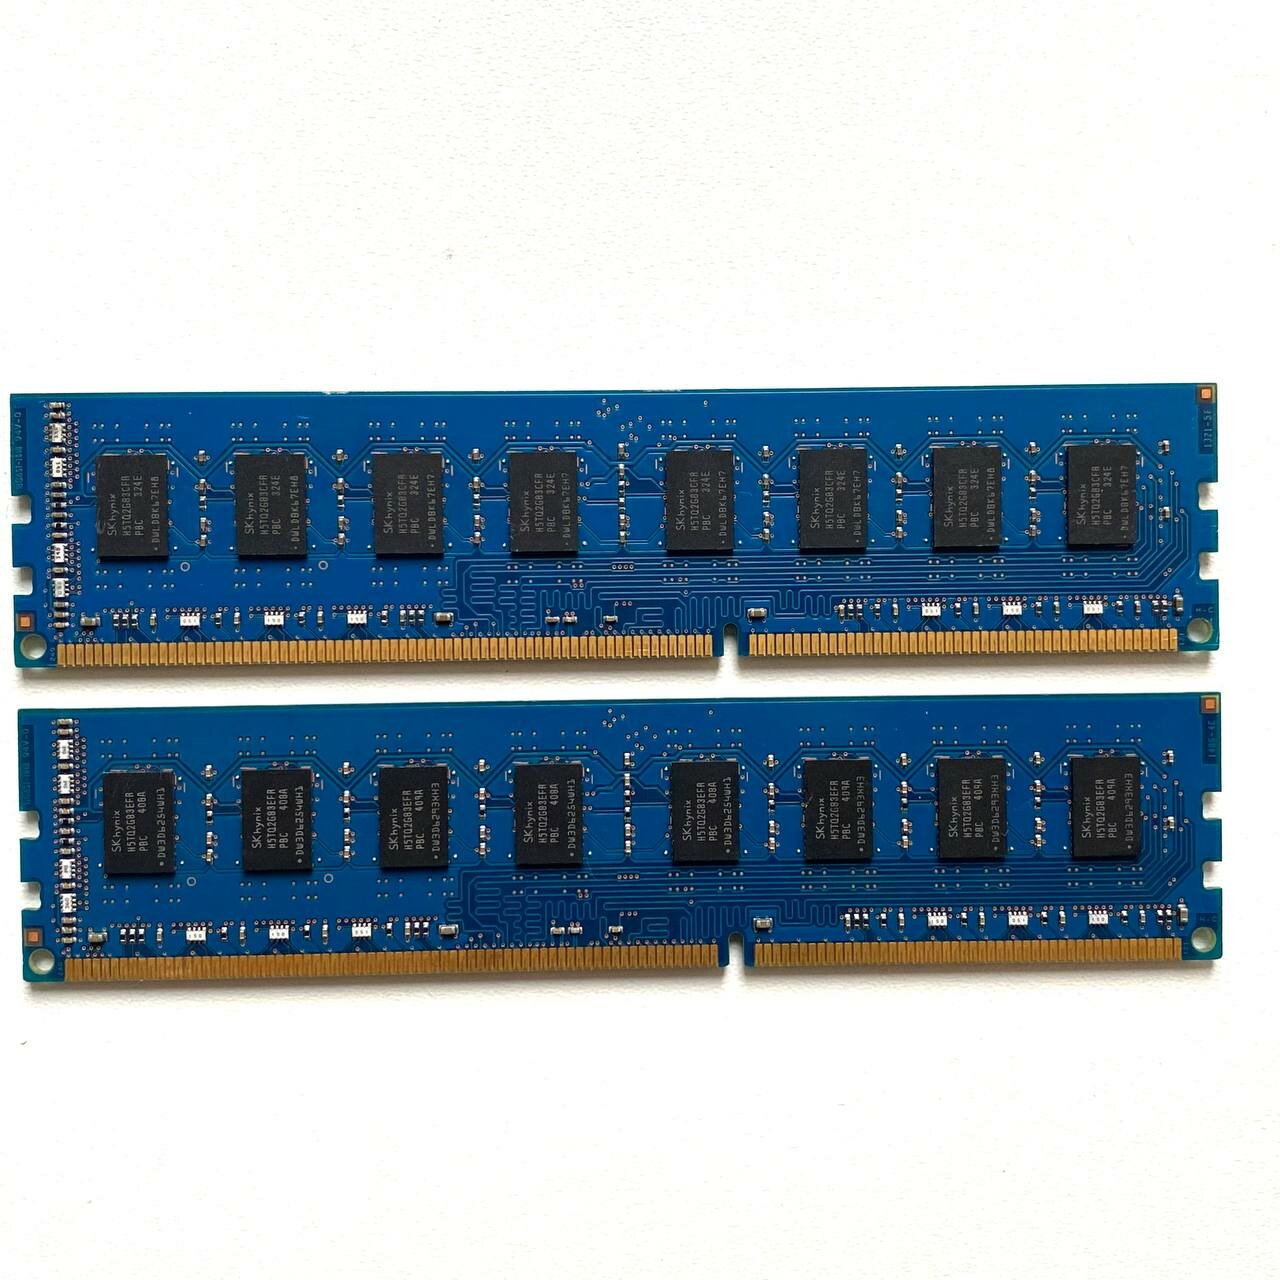 Модуль памяти SK hynix DDR3 4GB 1333Мгц 2Rx8 1.5v PC3-10600U DIMM 2шт